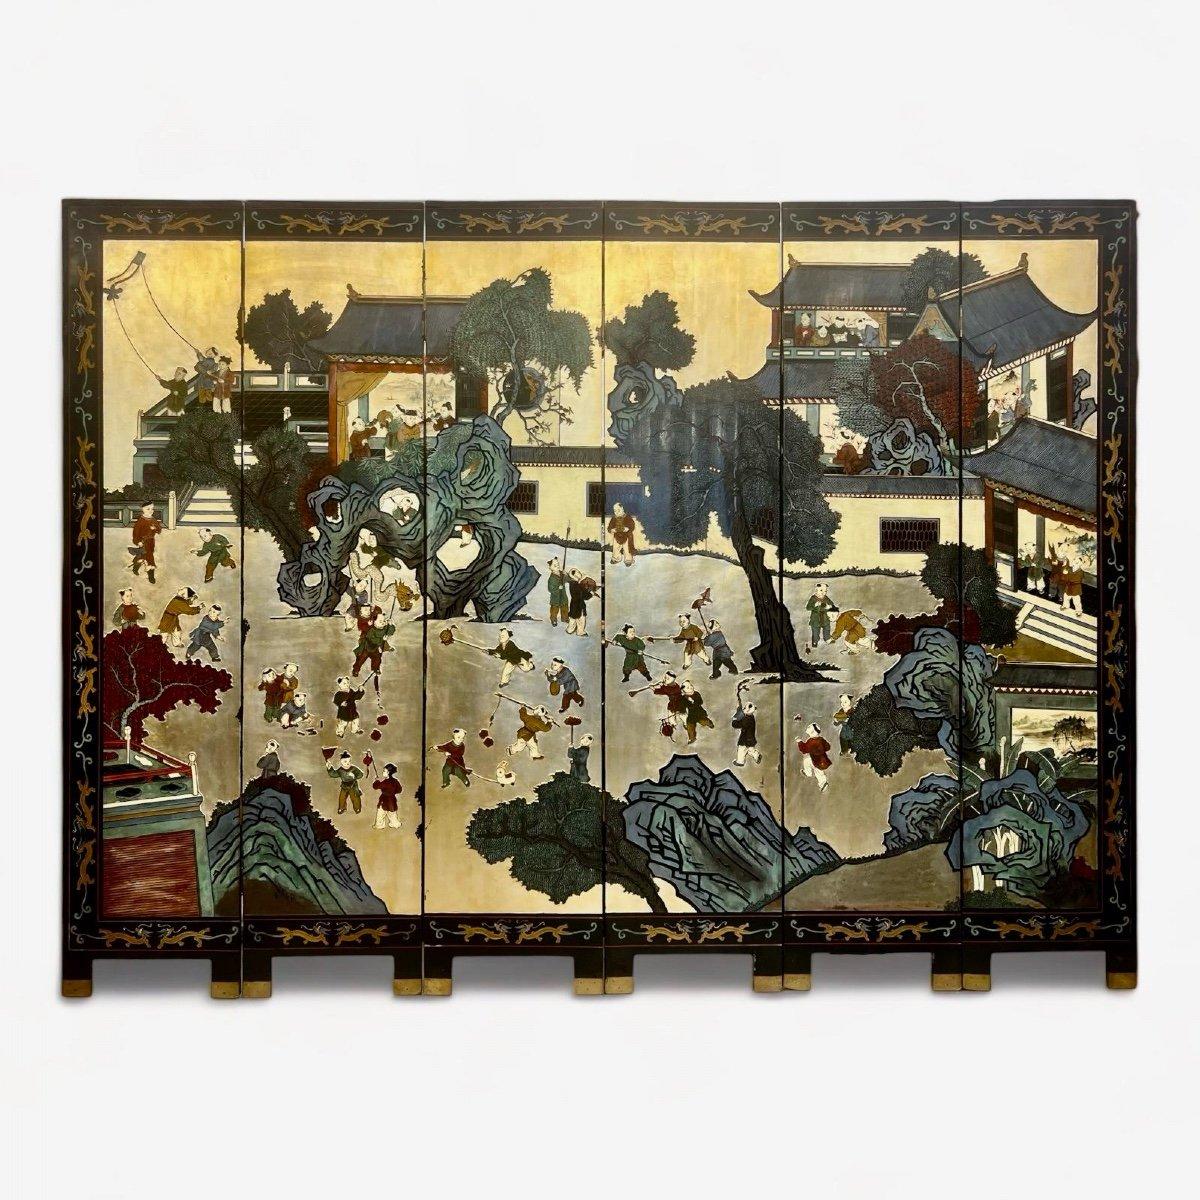 Cet exquis paravent à six volets en laque de coromandel chinoise du début du XXe siècle représente des scènes vivantes d'enfants jouant dans un paysage de village traditionnel. La richesse et l'abondance des caractères sur fond d'or en font une